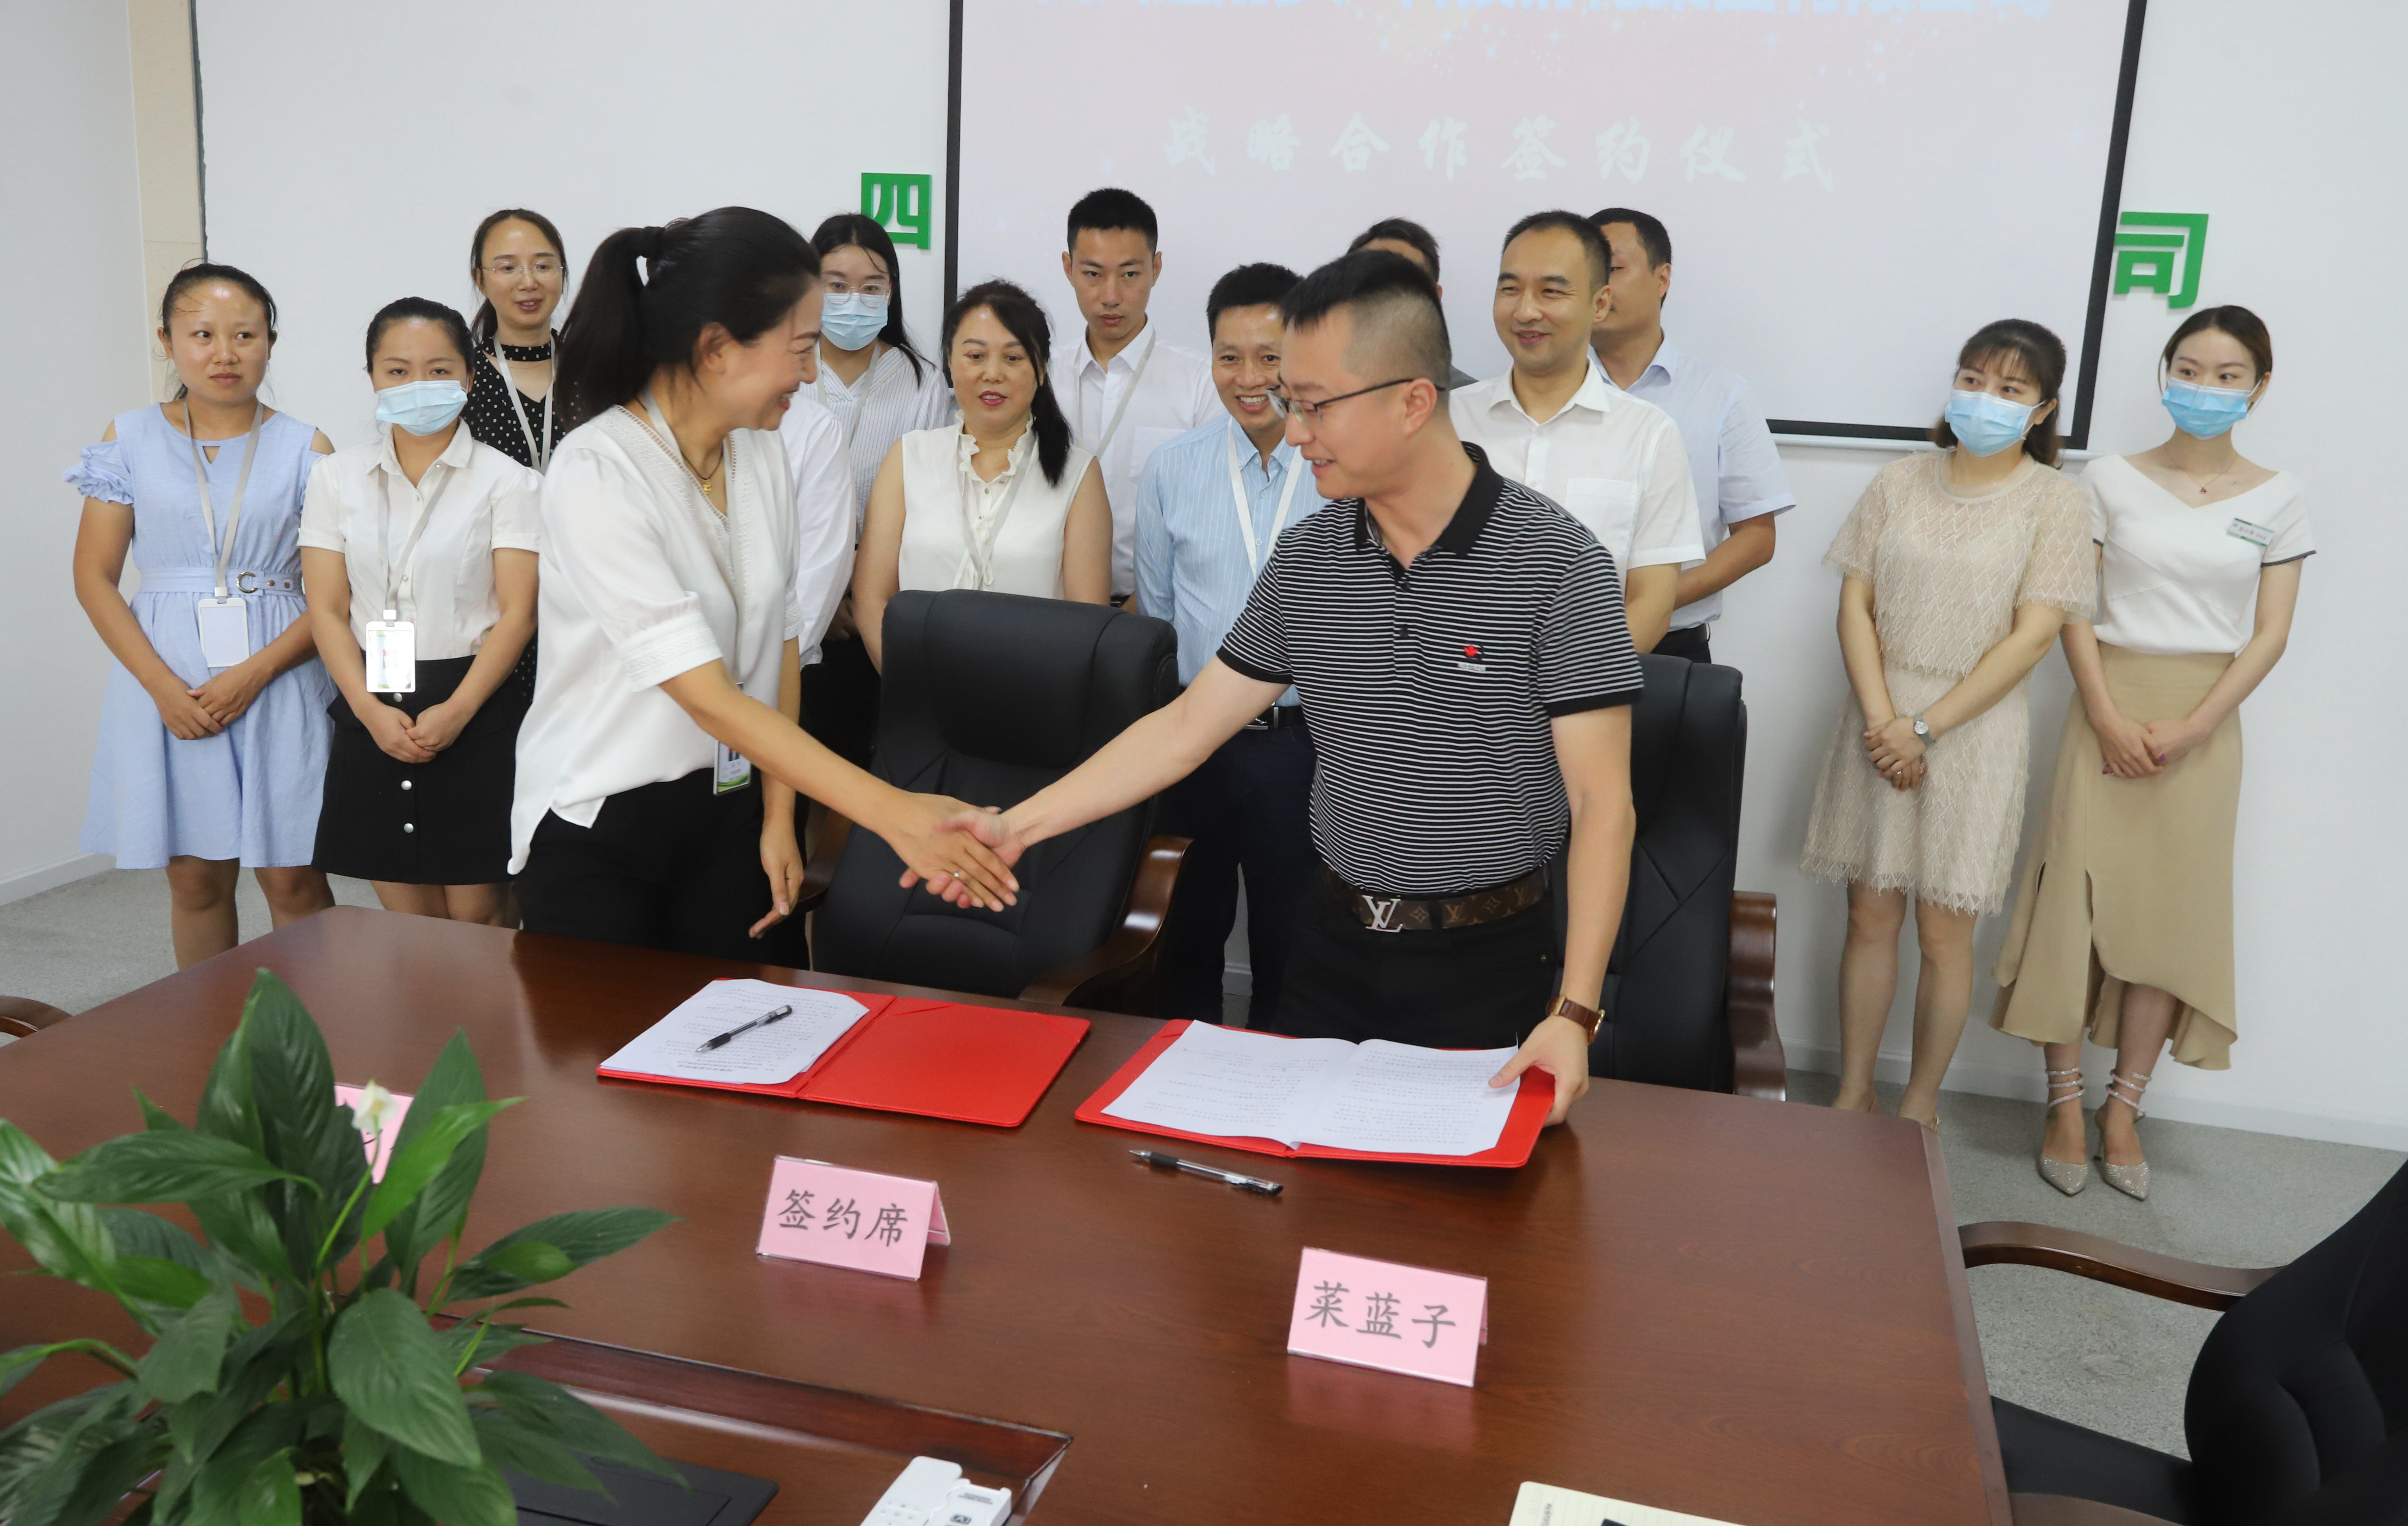 彭山建刚乡产科技孵化集团与四川菜蓝子公司签约亿元供销合作协议